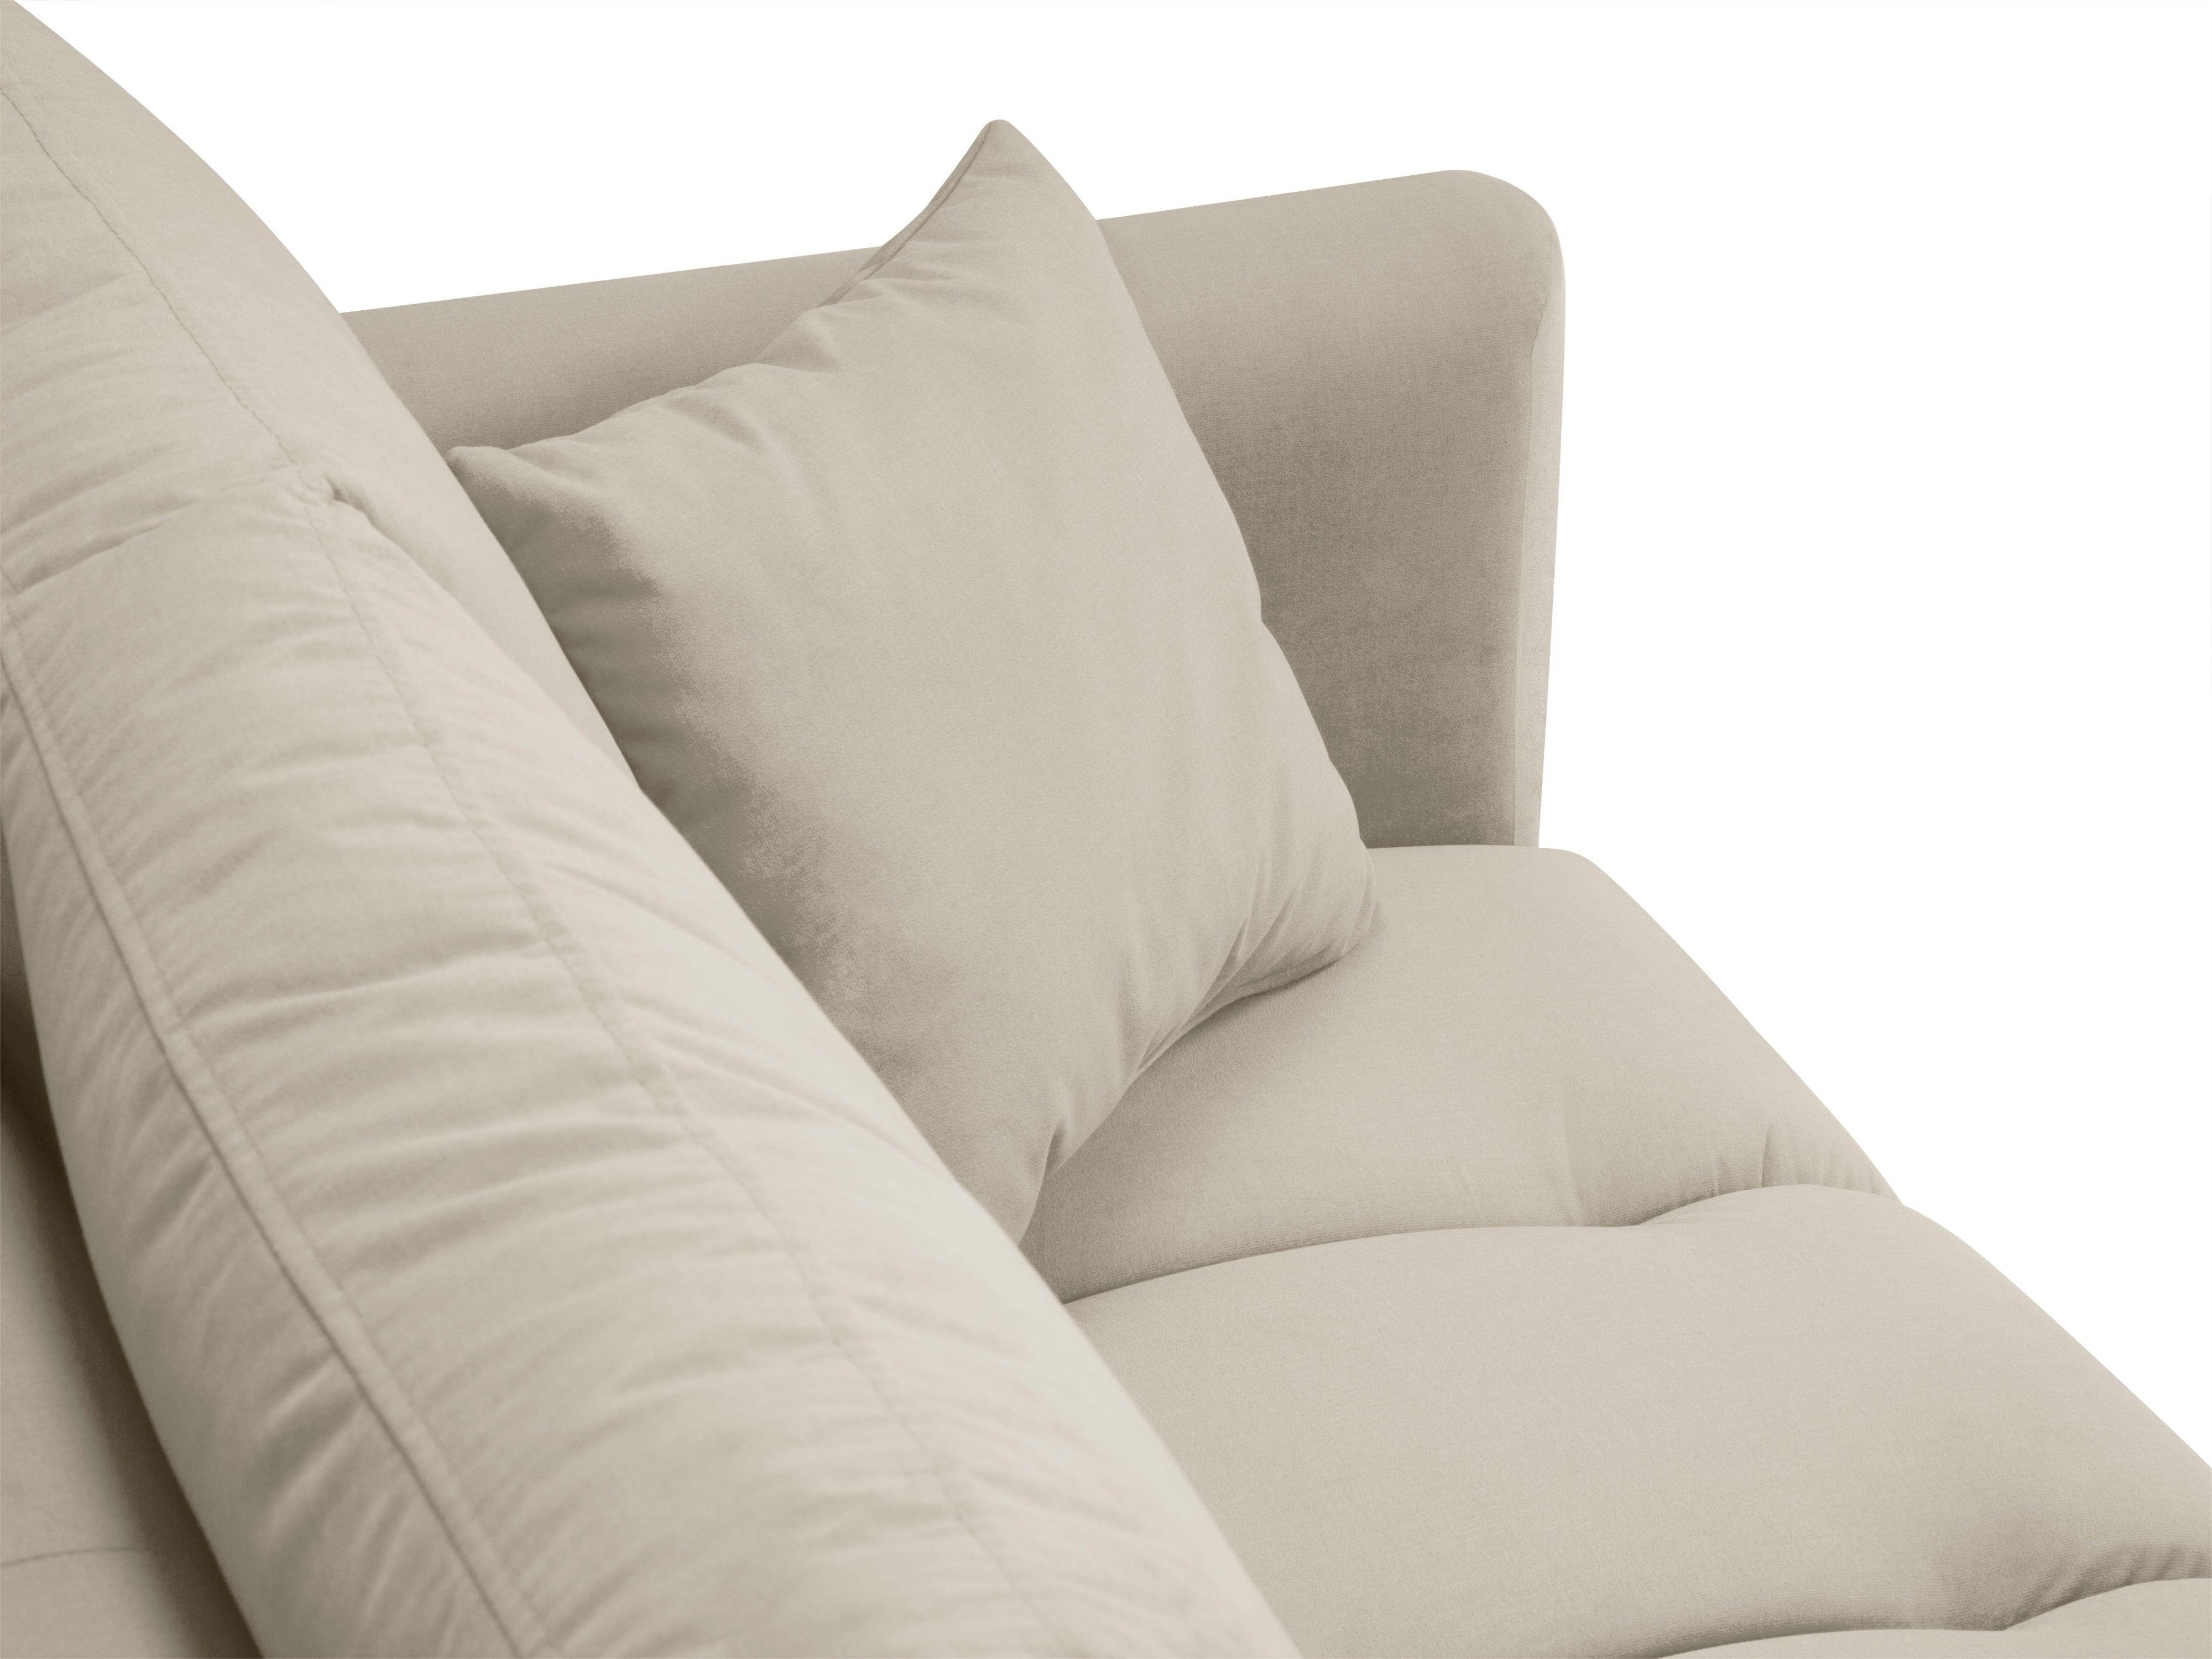 Sofa aksamitna 3-osobowa OCTAVE beżowy ze złotą podstawą Interieurs 86    Eye on Design